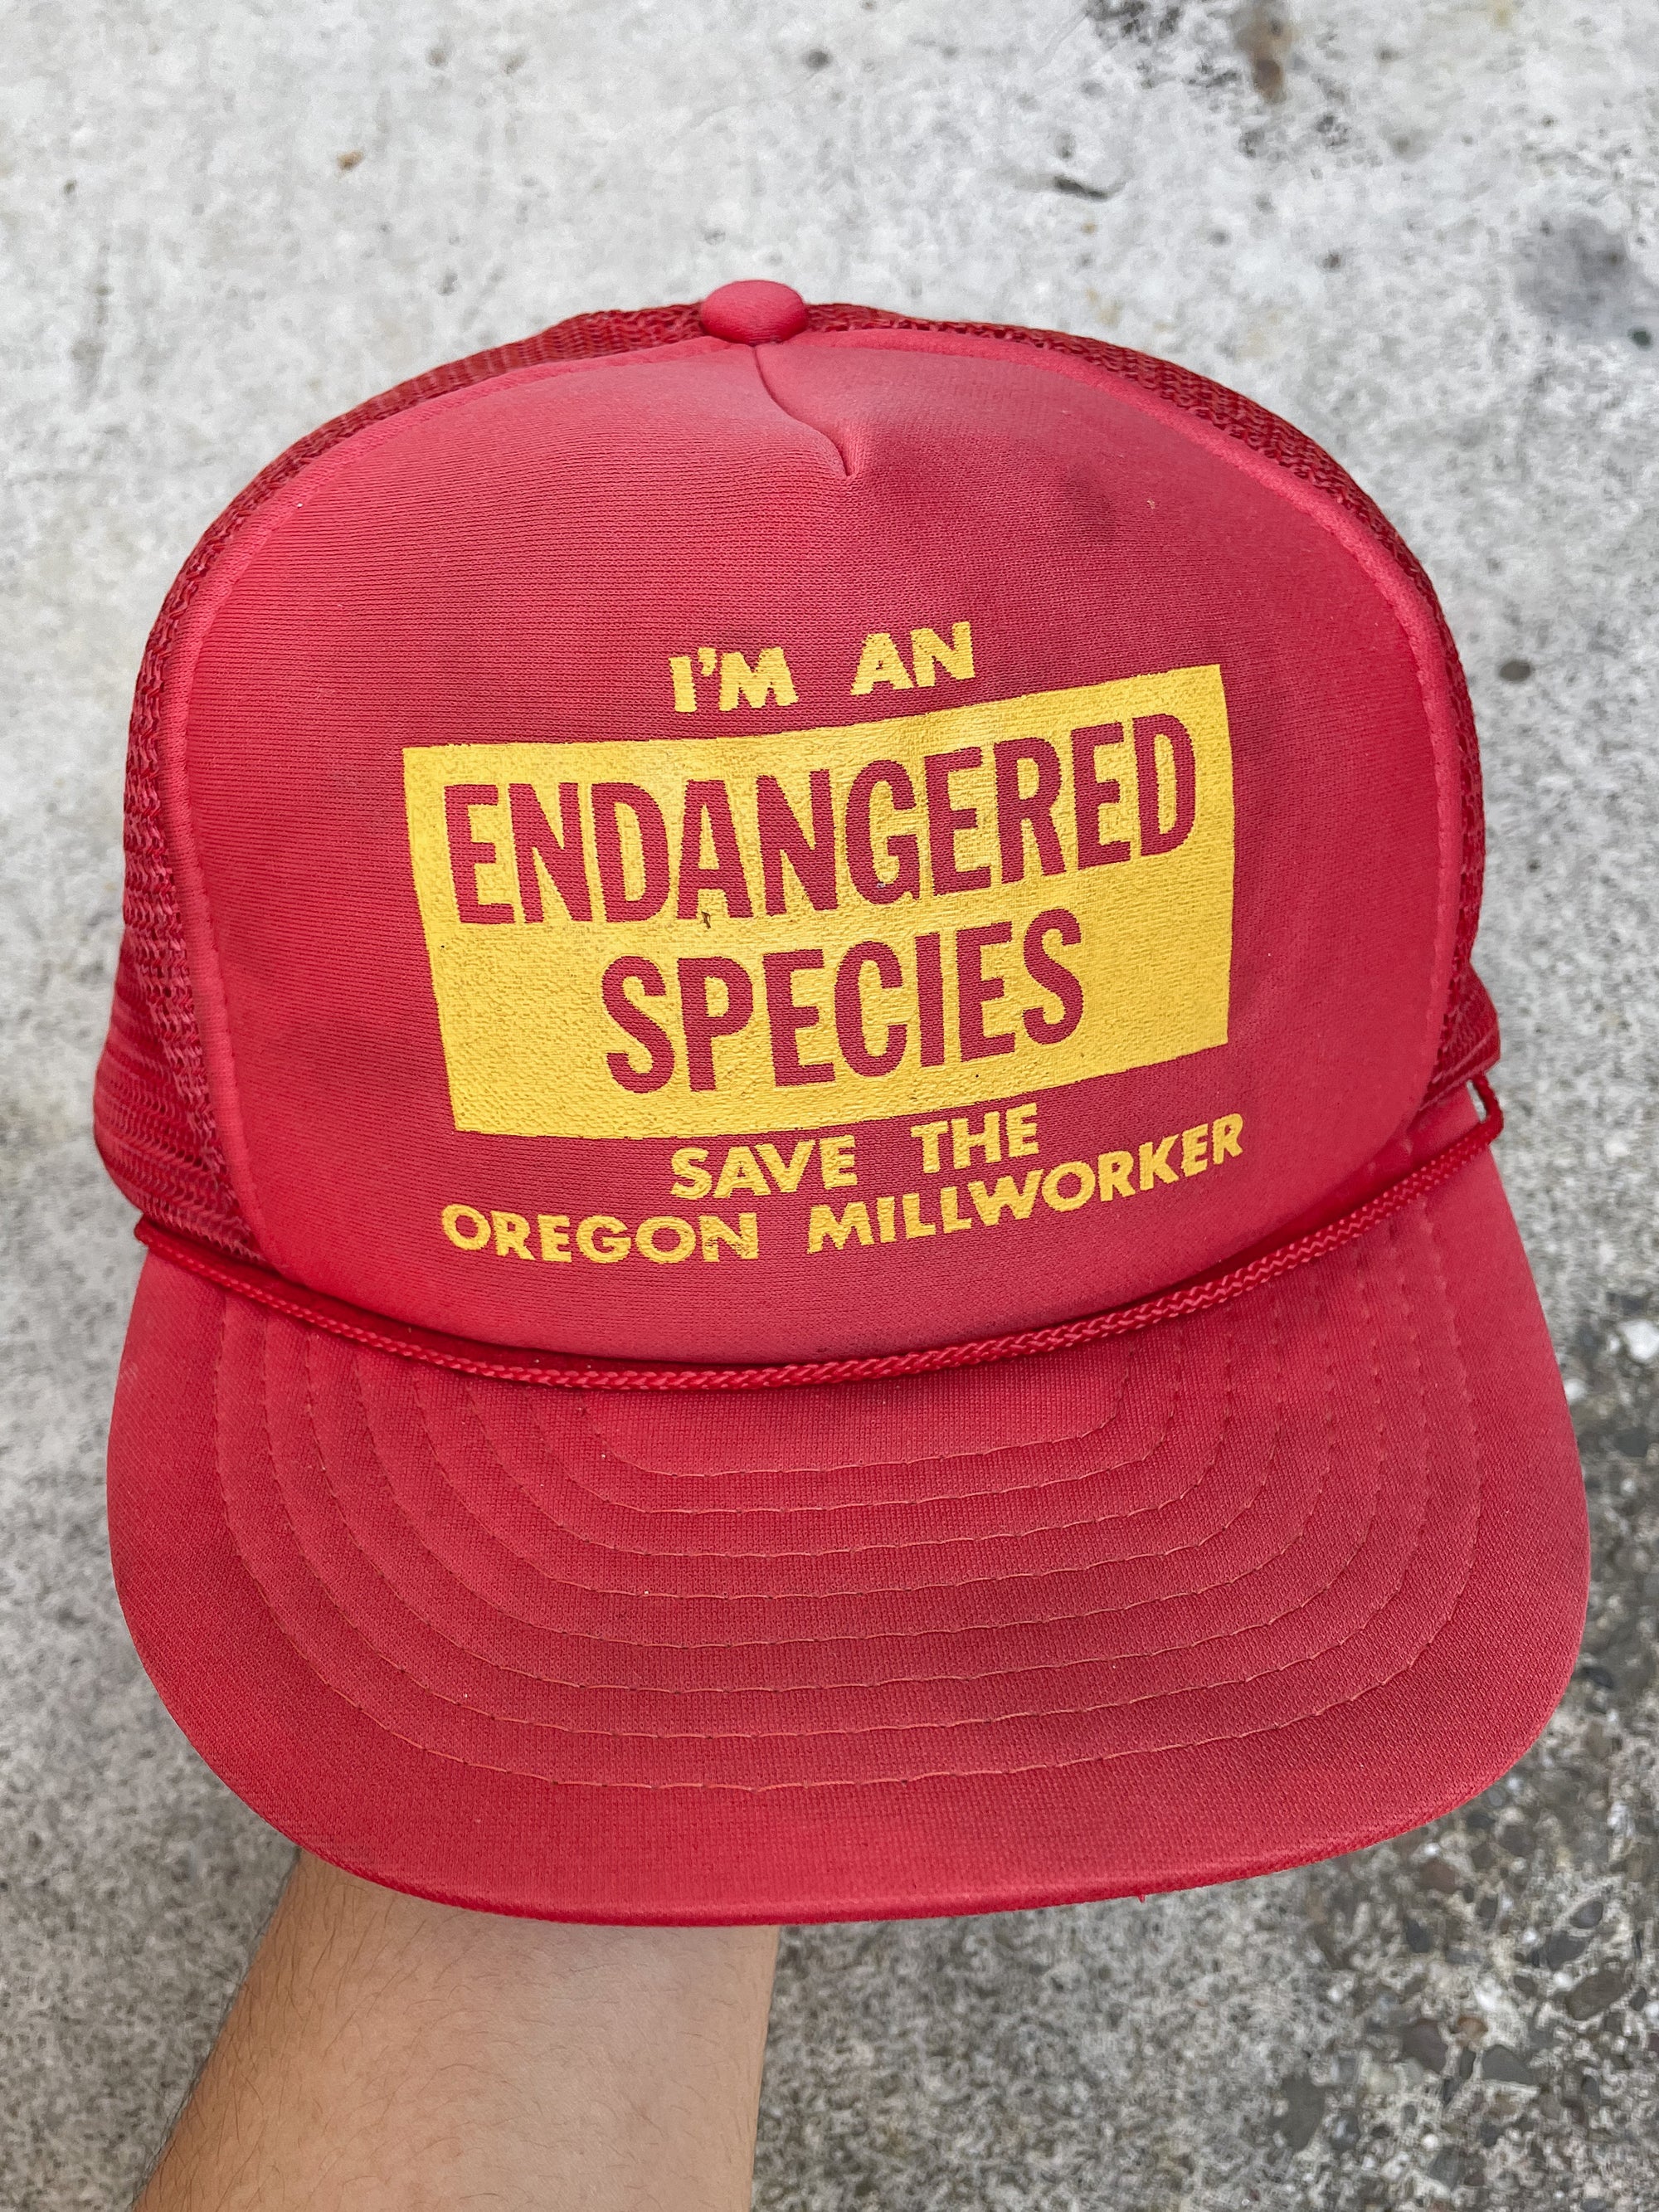 1990s “Endangered Species” Trucker Hat